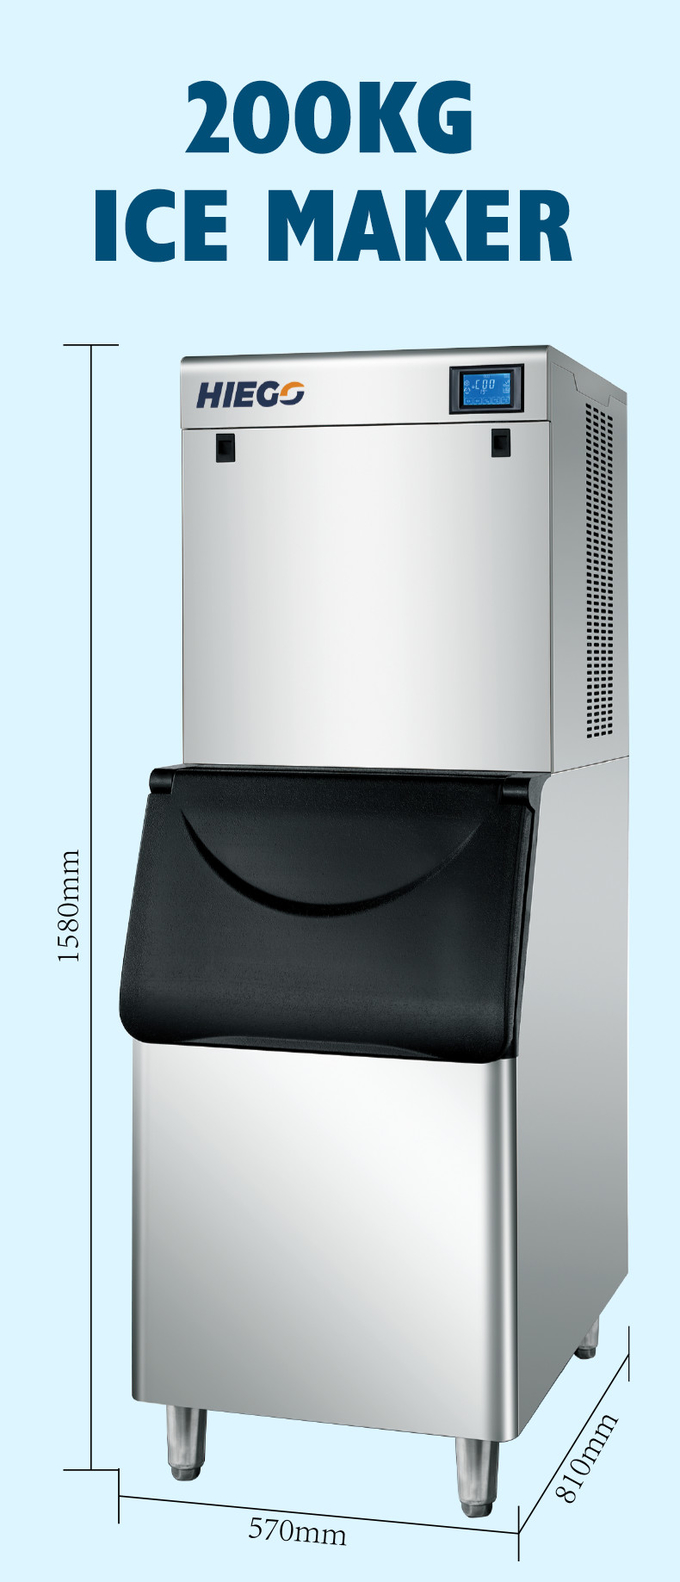 Εμπορική μηχανή παγομηχανής 200kg/24h Αυτόματη παγομηχανή για χρήση σε ξενοδοχεία 7